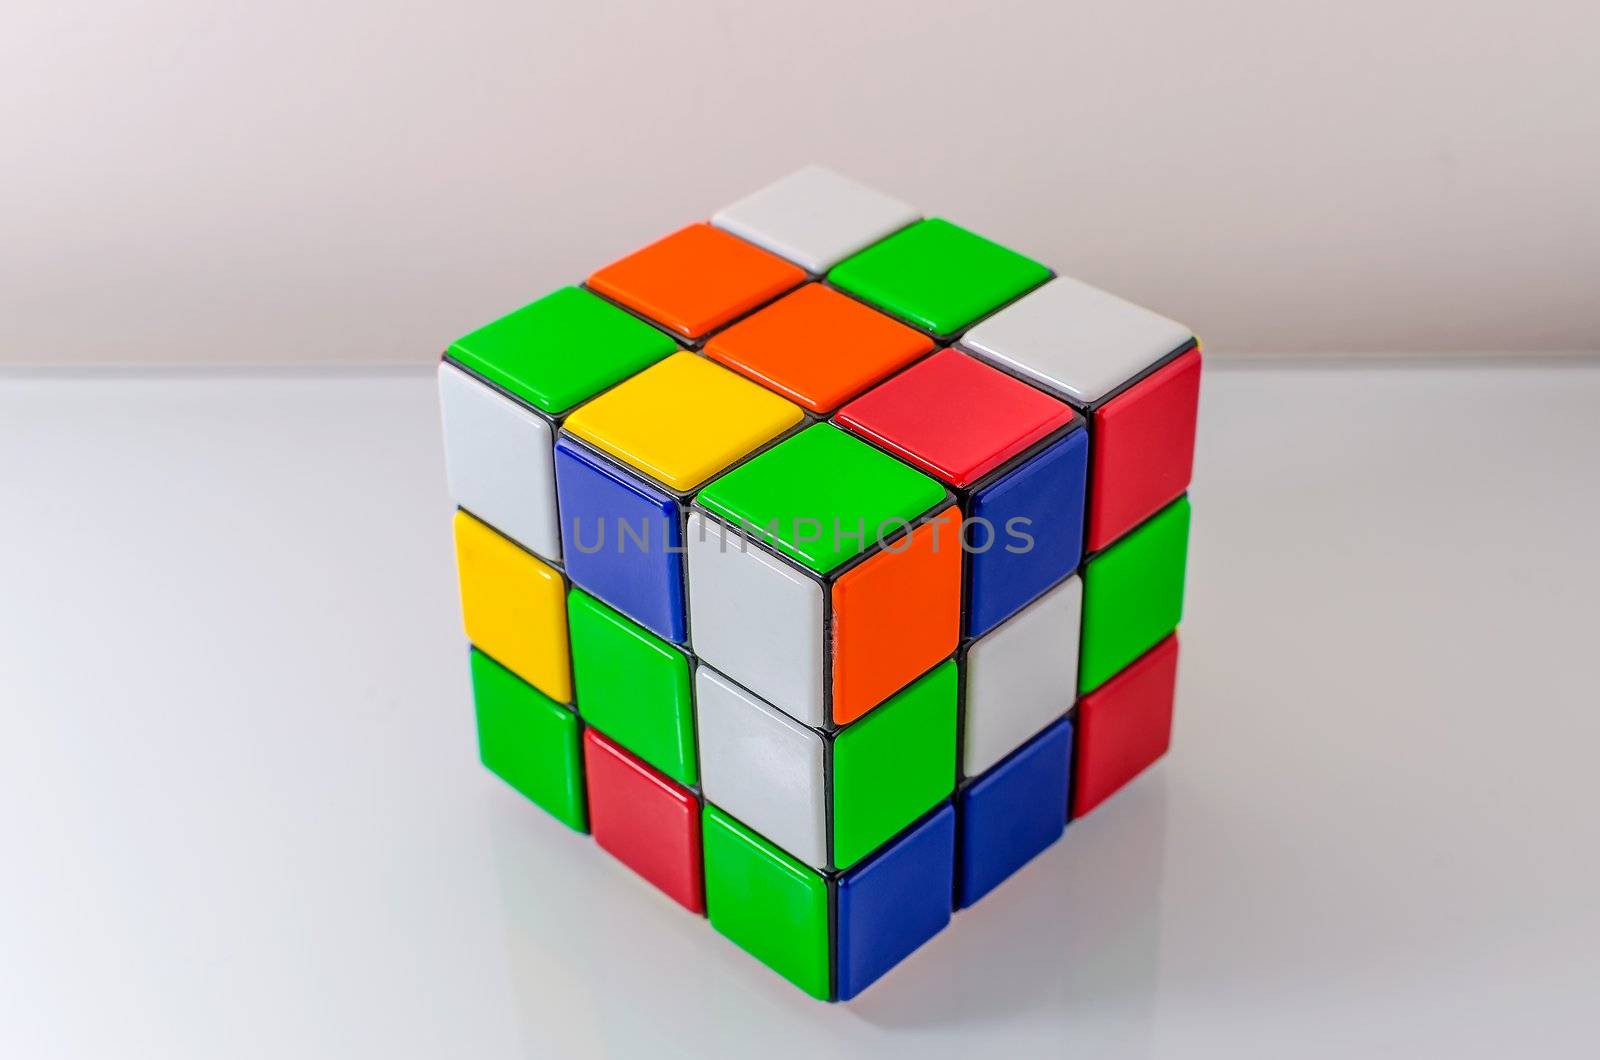 Unsolved Rubiks Cube by marcorubino